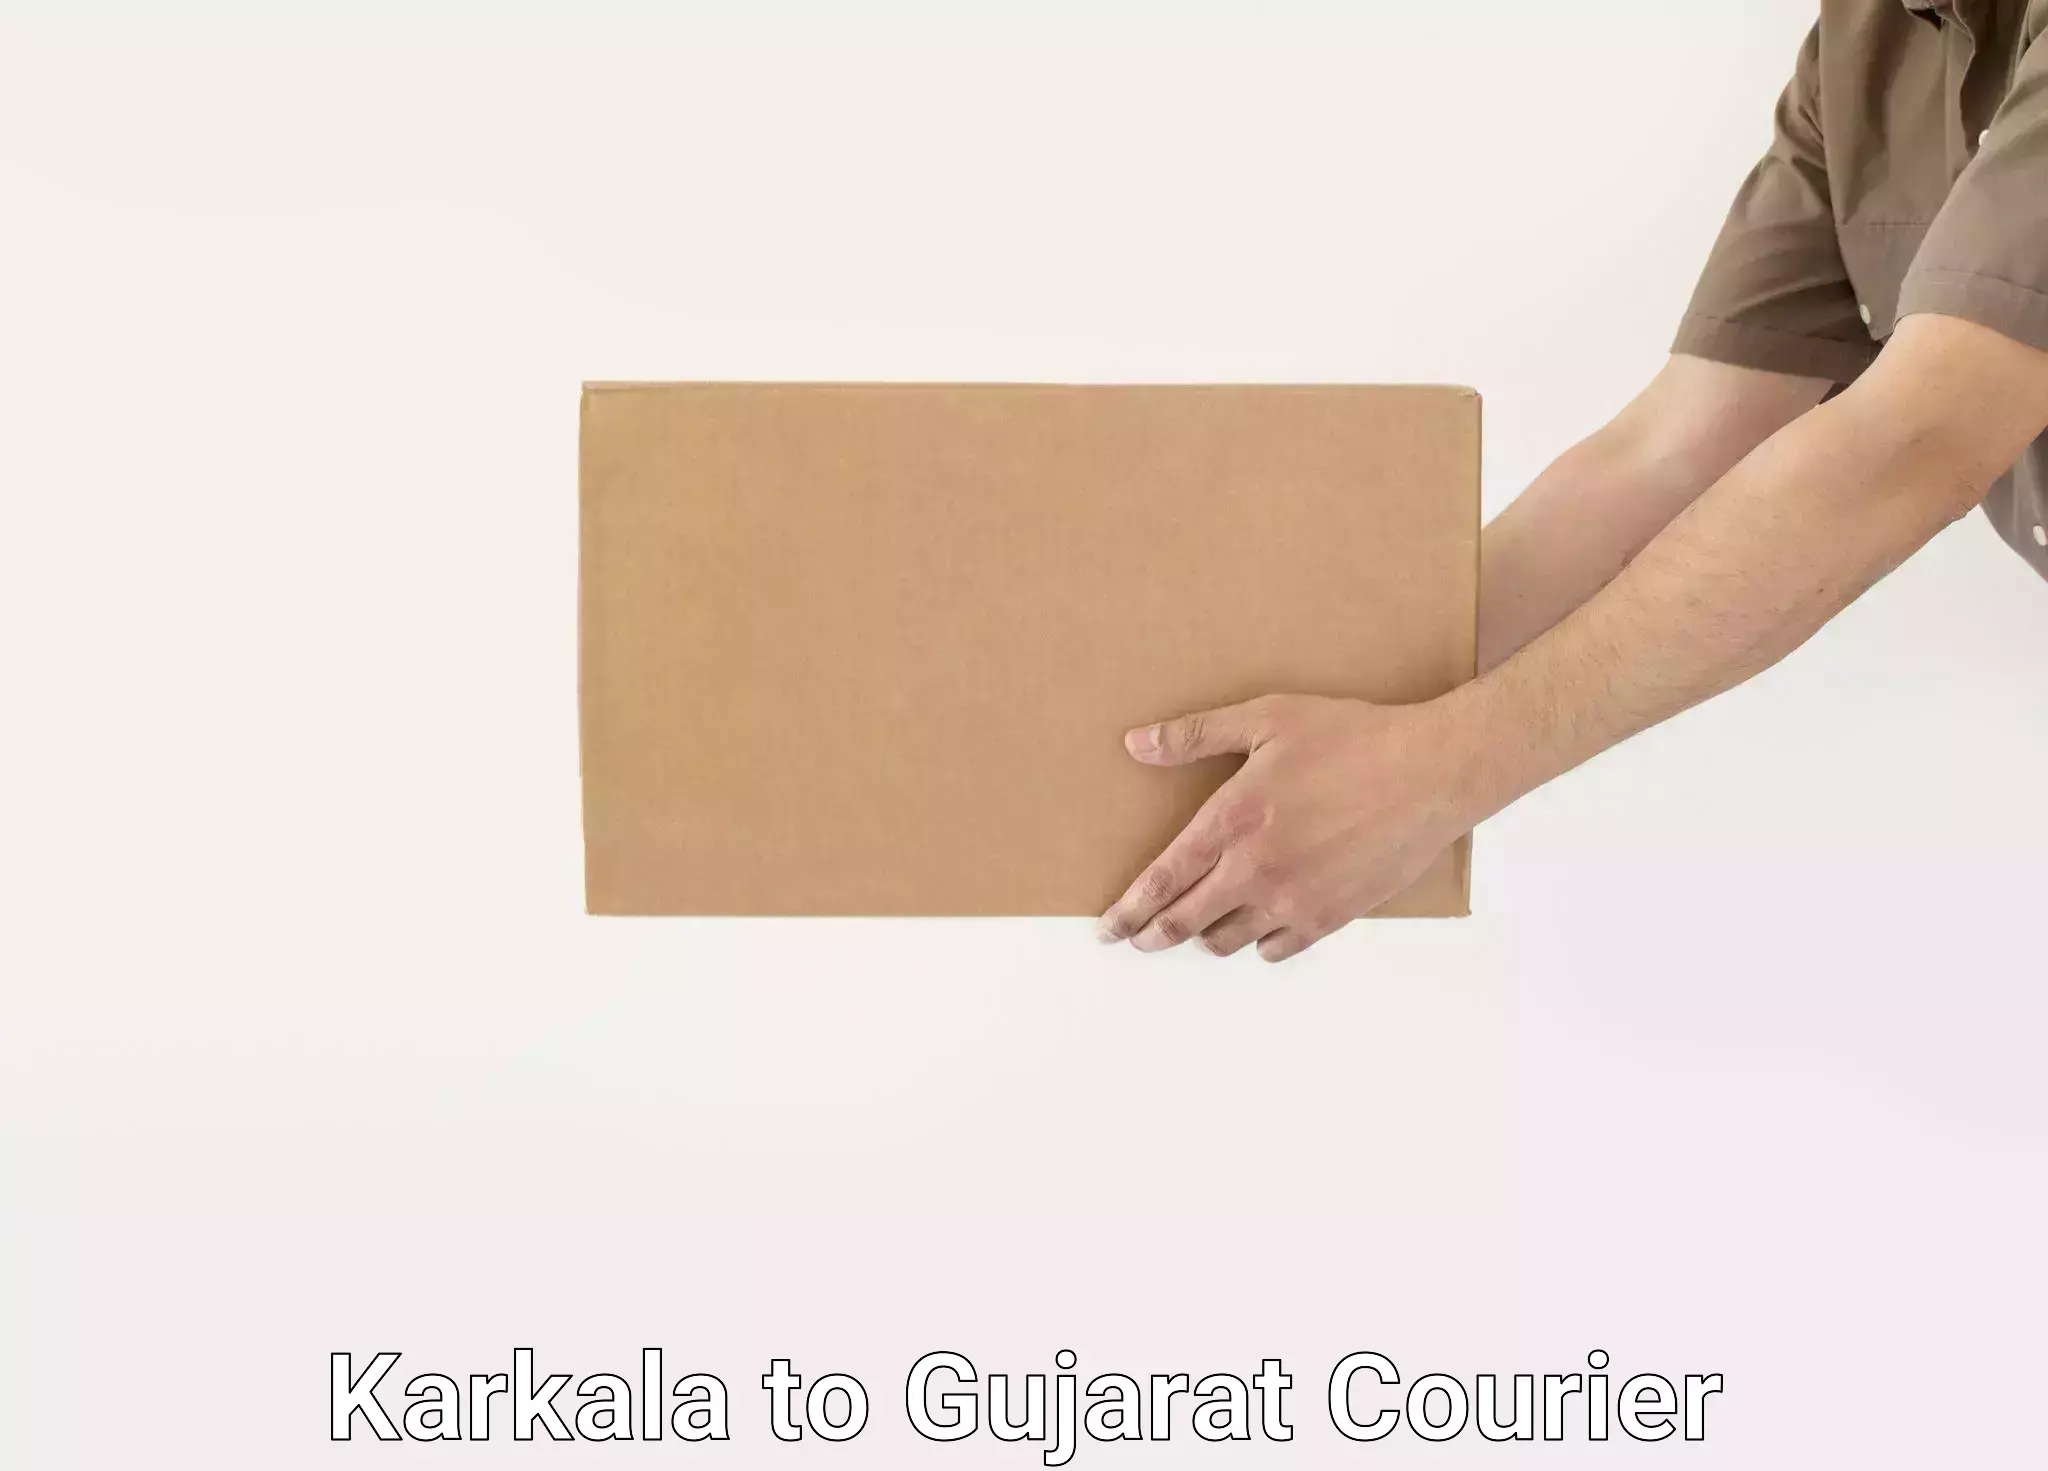 Furniture delivery service Karkala to Gujarat